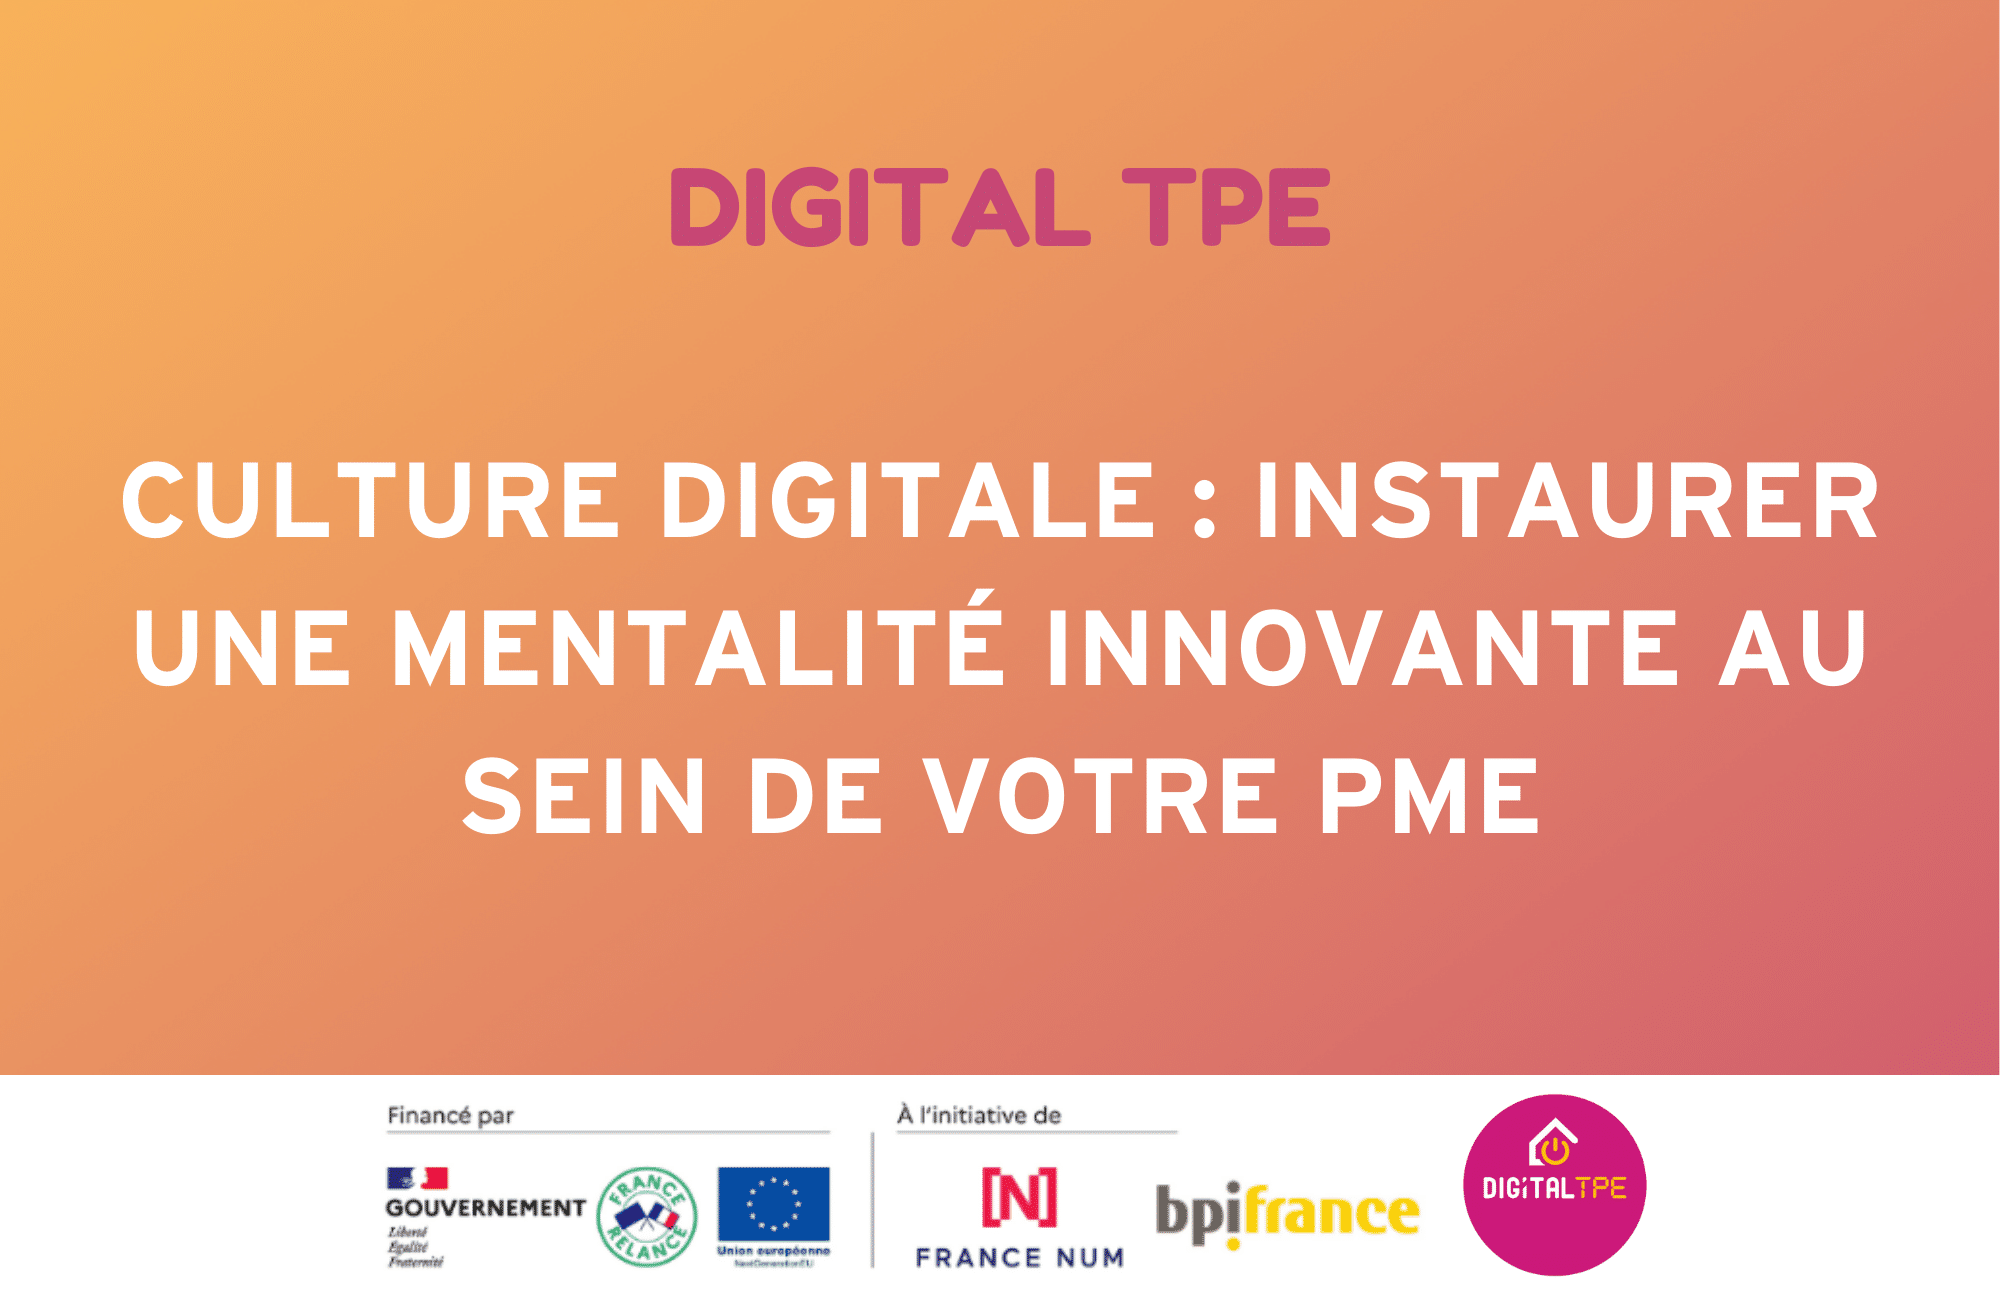 Image d'illustration de l'article de blog Digital TPE :Culture digitale : instaurer une mentalité innovante au sein de votre PME